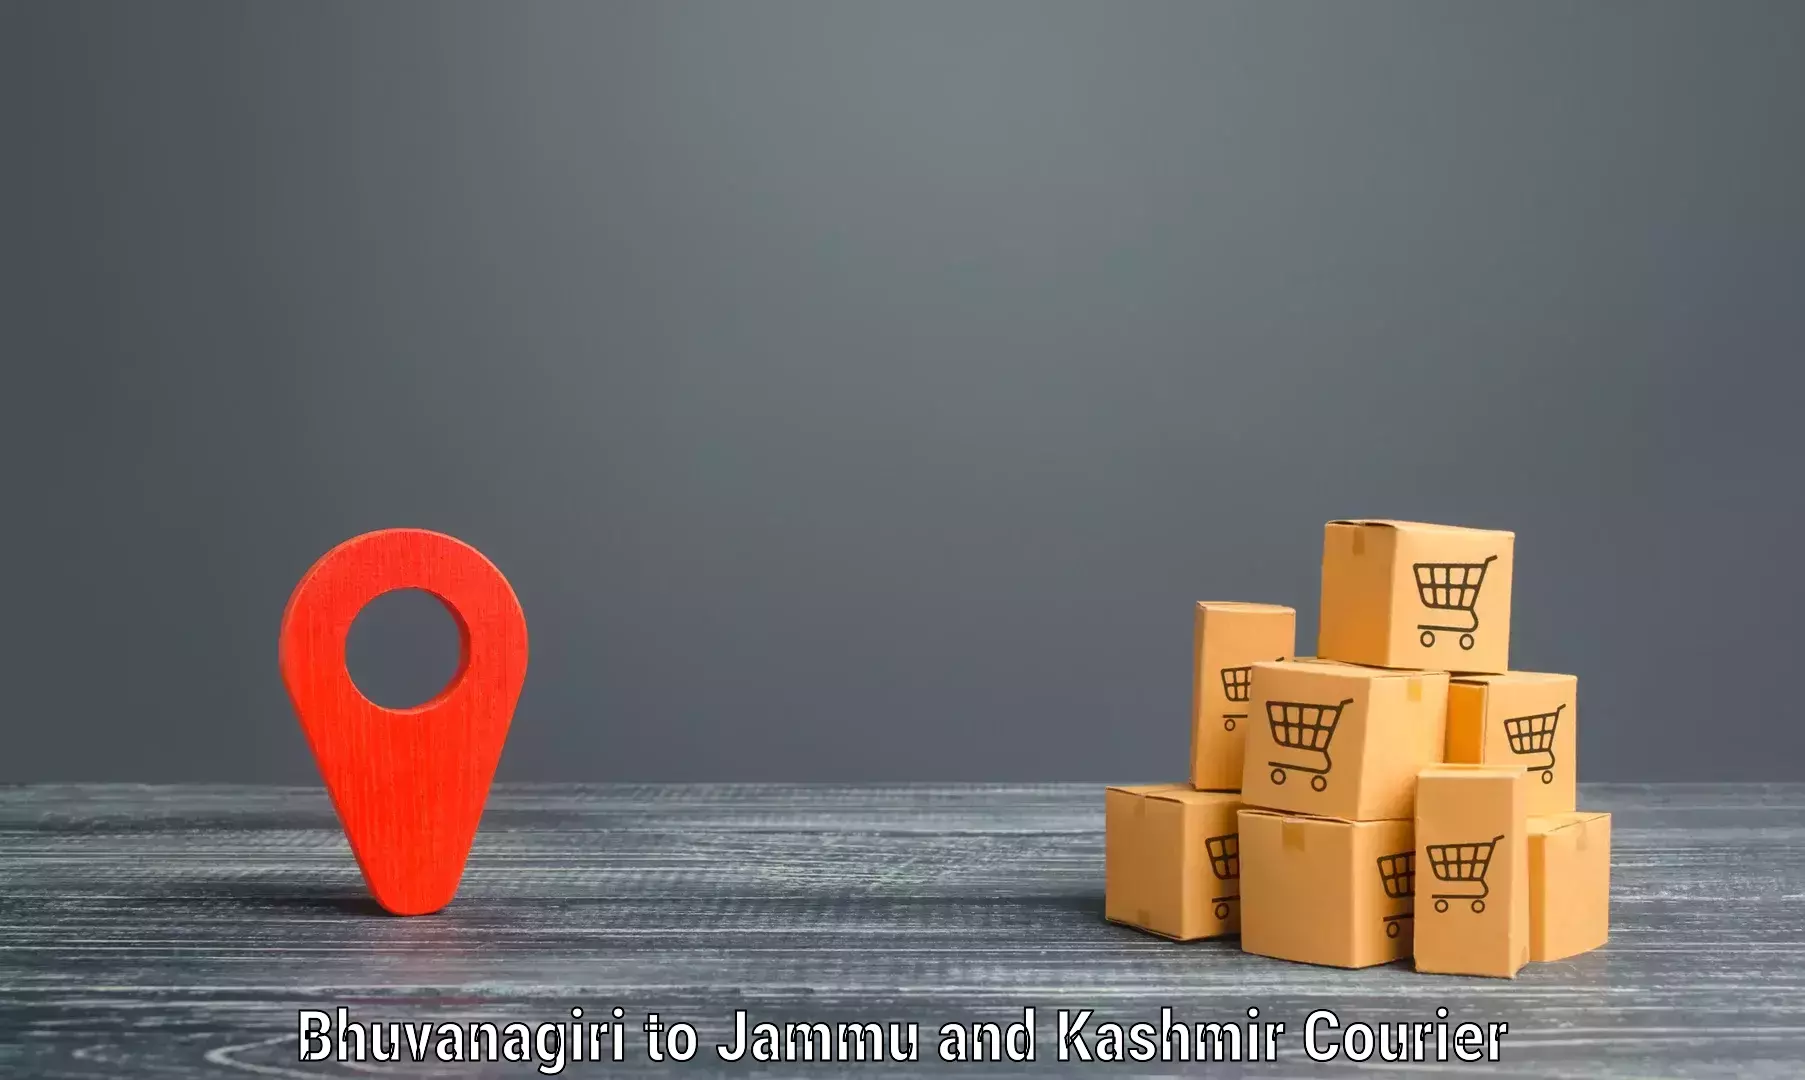 On-call courier service Bhuvanagiri to Ramban